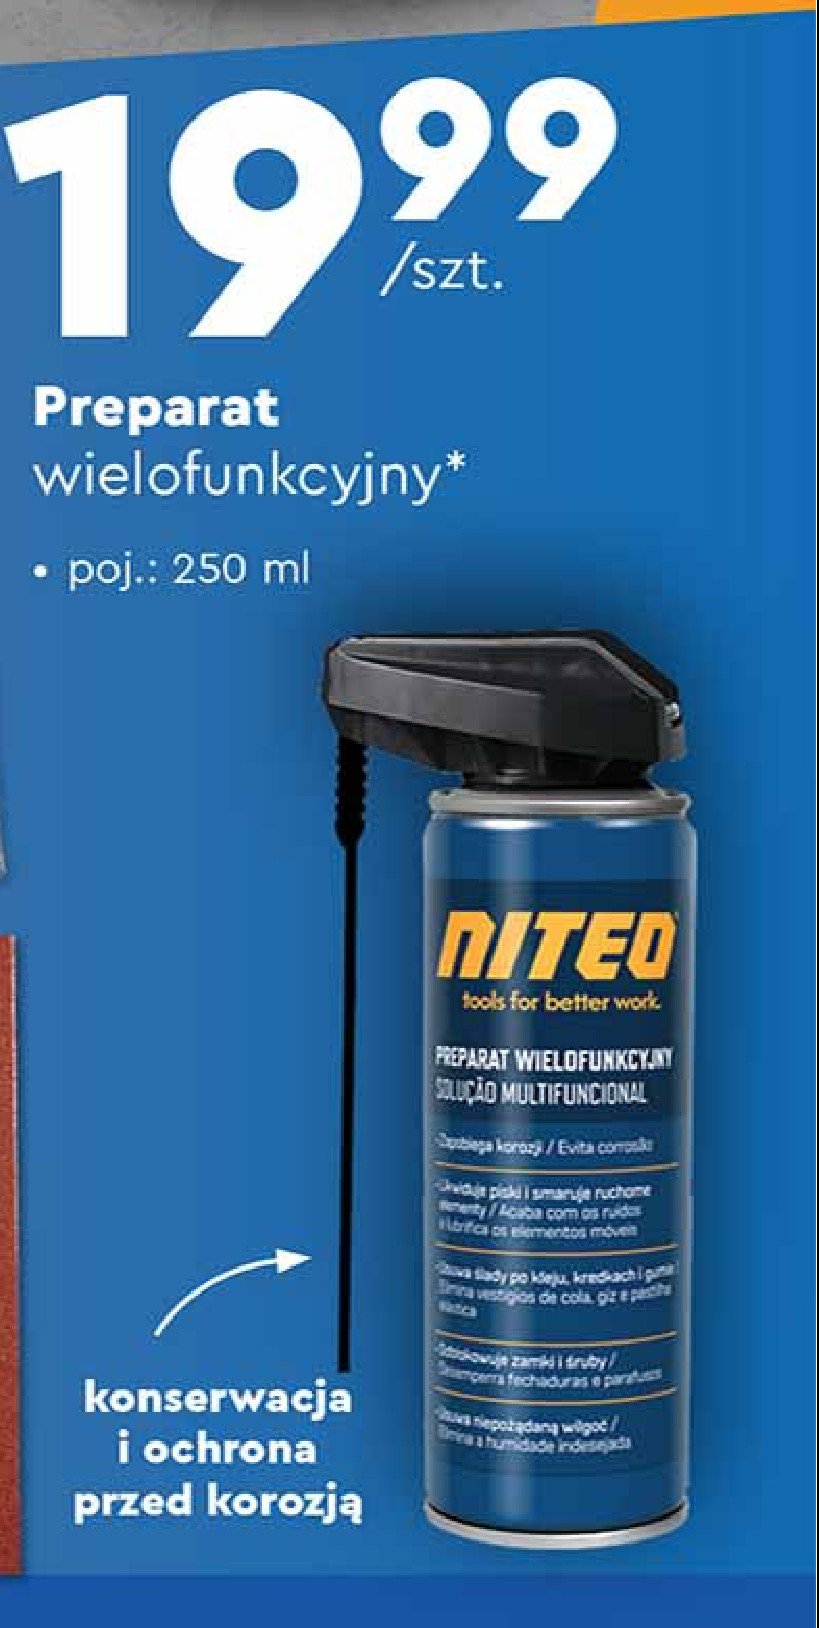 Preparat wielofunkcyjny Niteo tools promocja